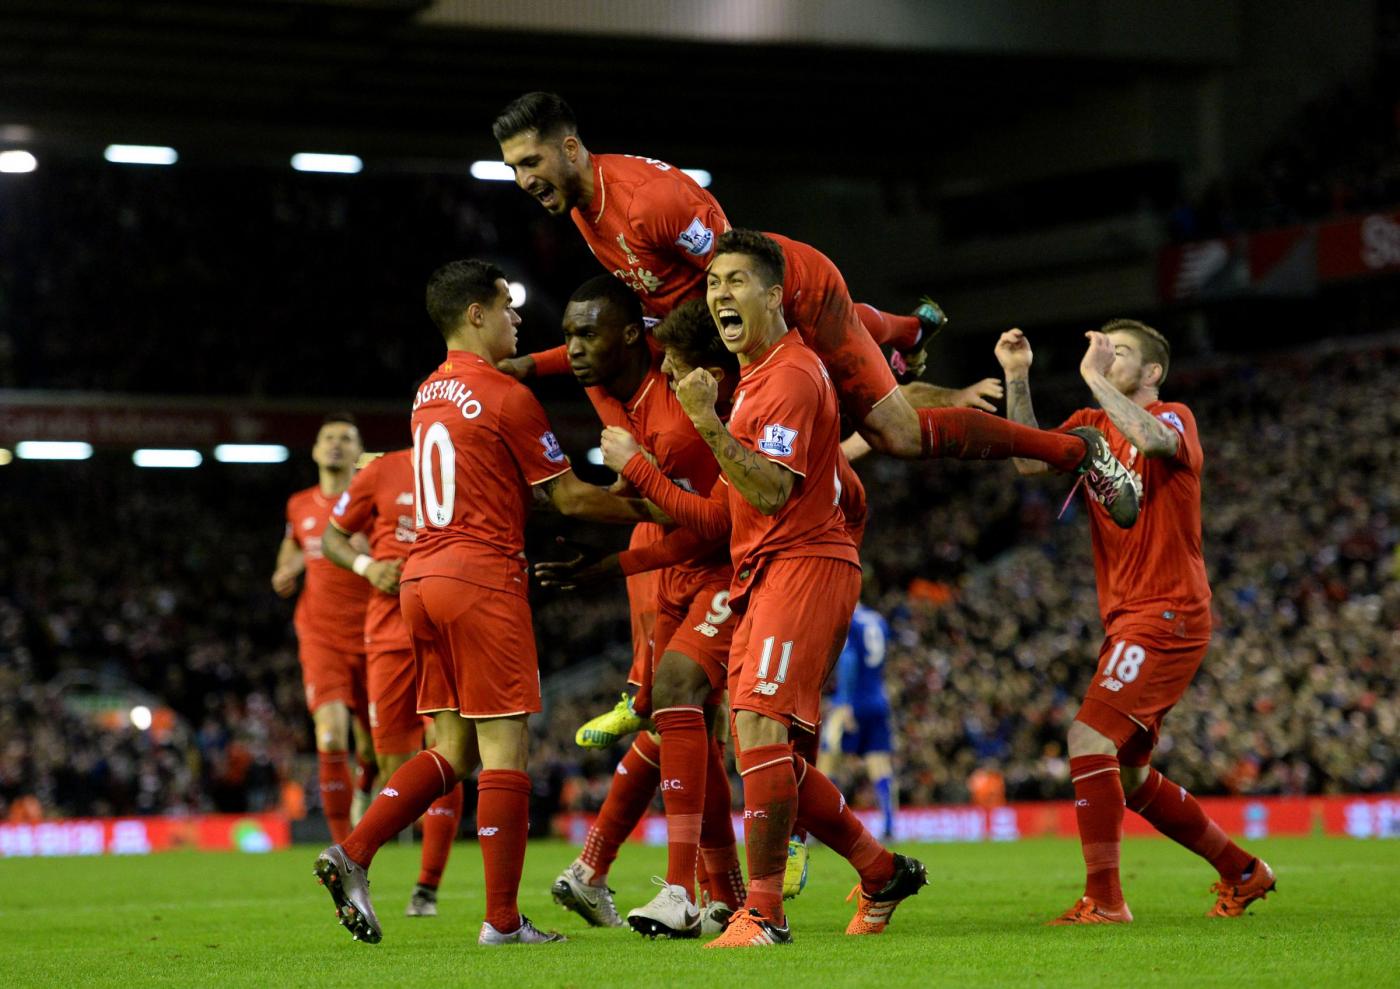 Huddersfield-Liverpool 30 gennaio, analisi e pronostico Premier League giornata 25